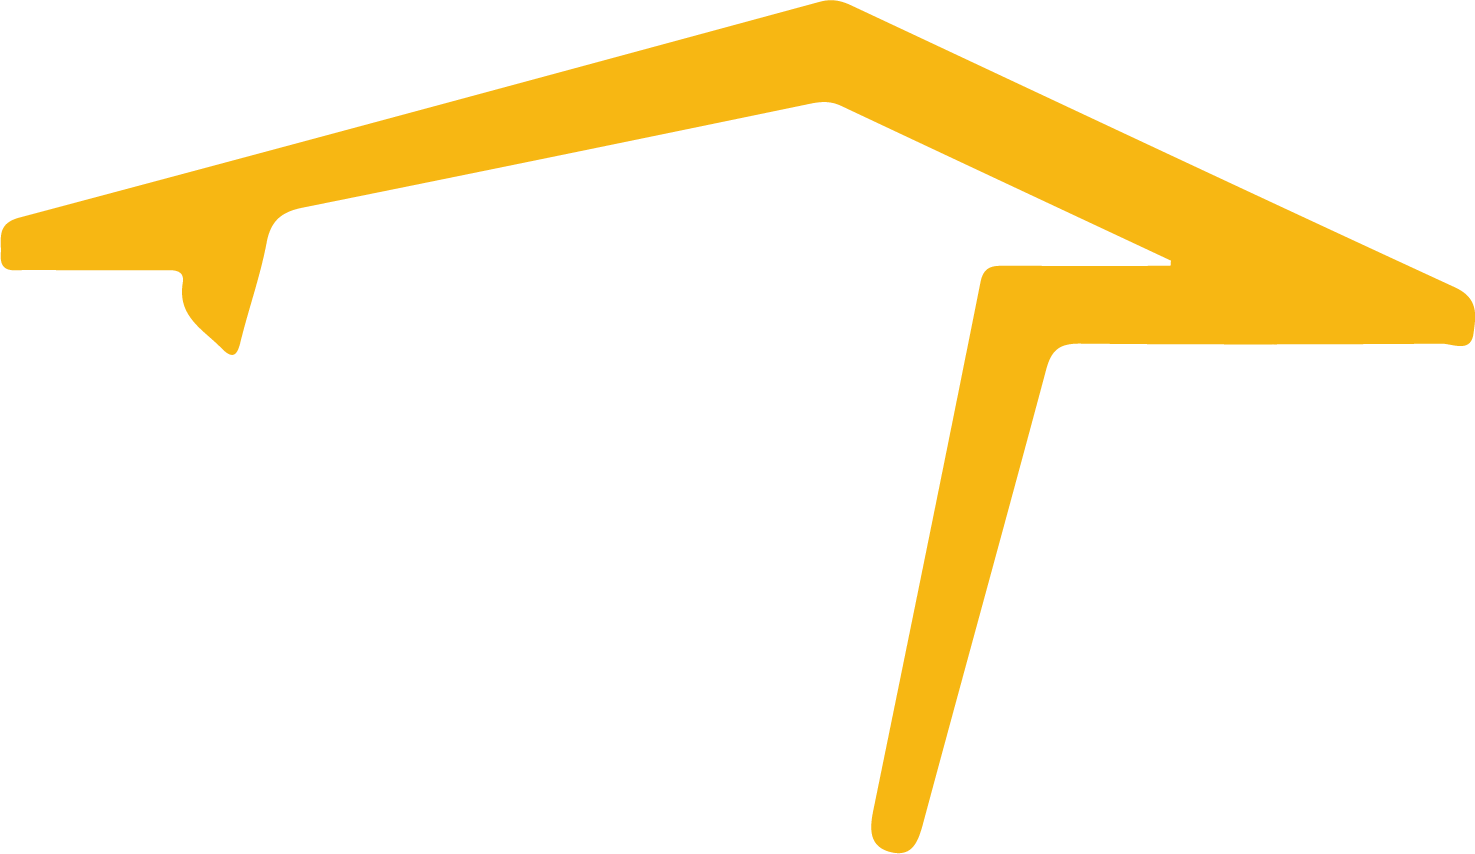 Repco Home Finance logo (PNG transparent)